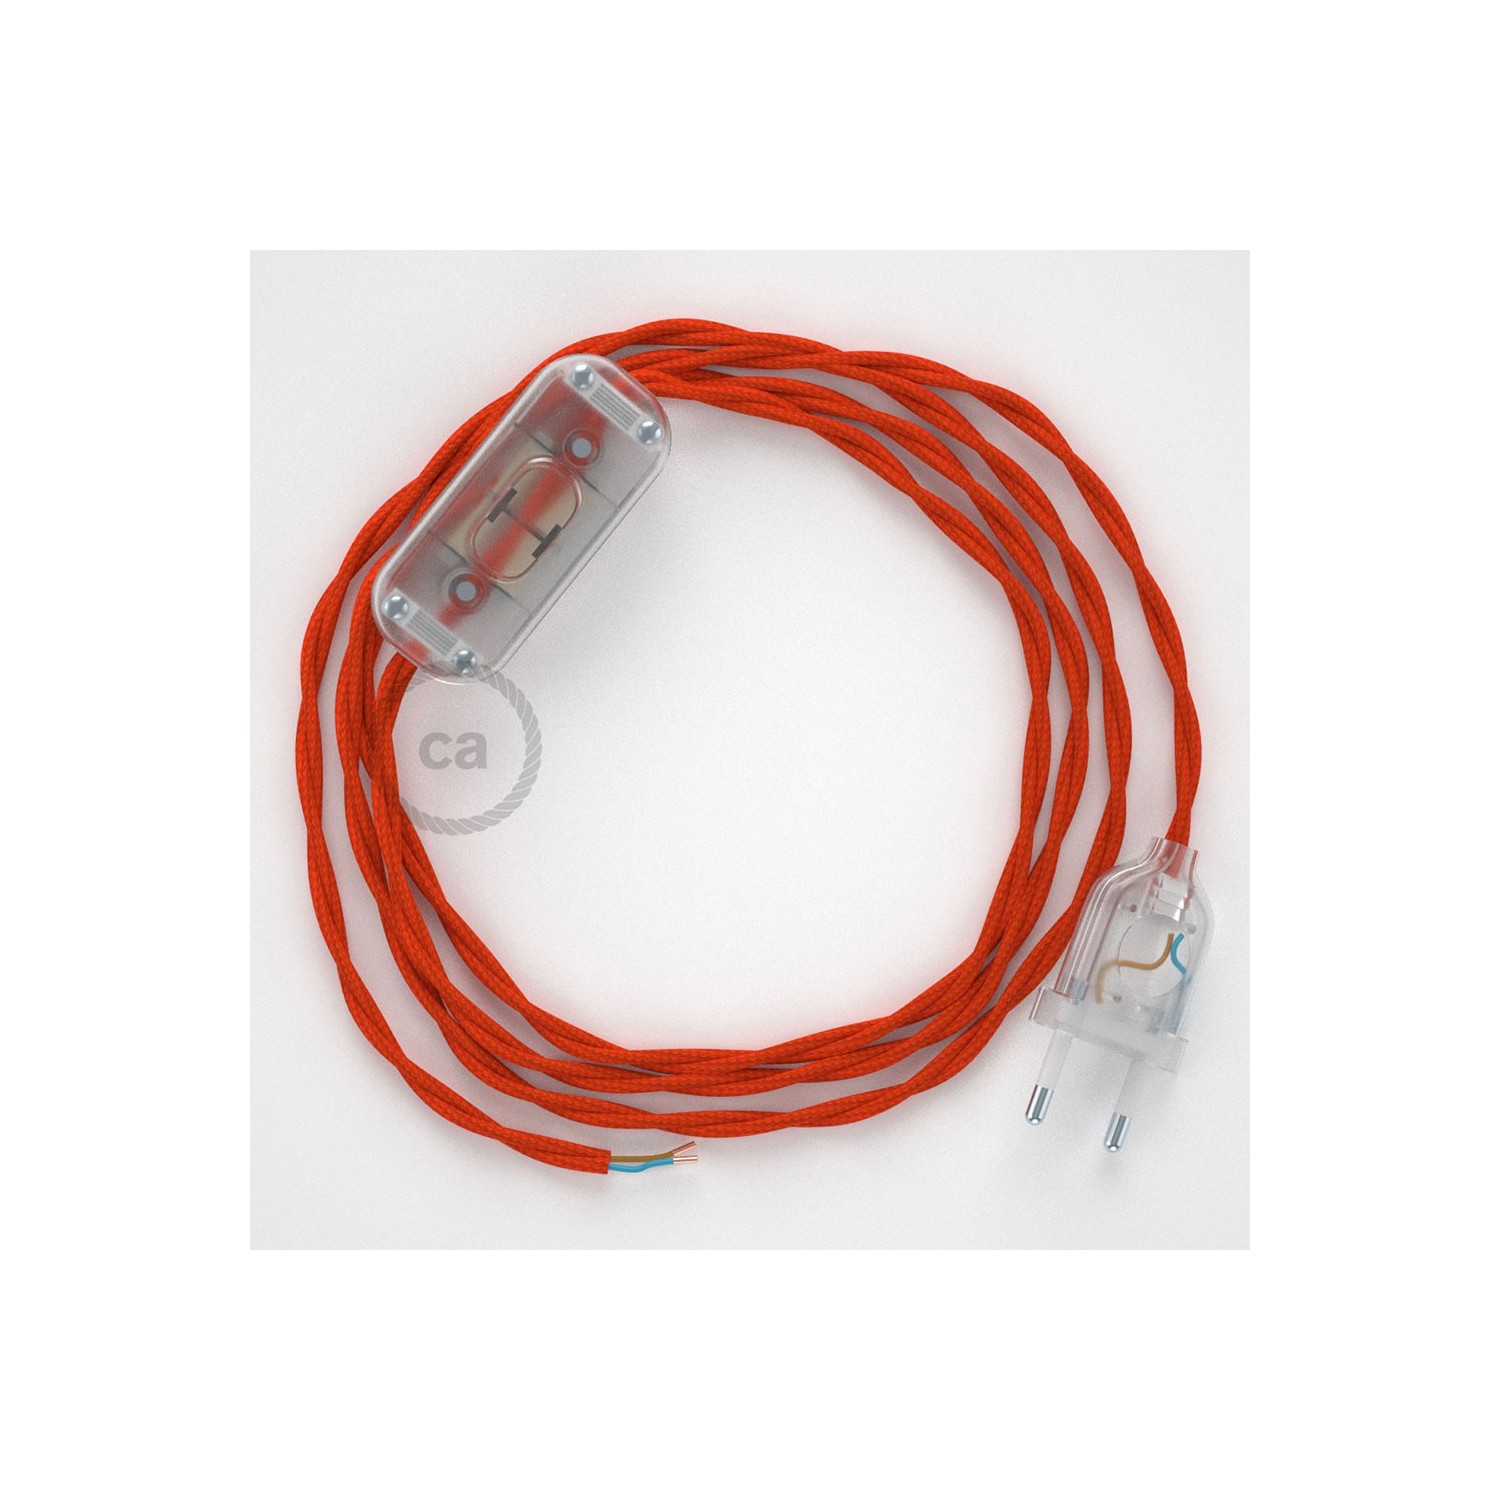 Sladdställ, TM15 Orange Viskos 1,80 m. Välj färg på strömbrytare och kontakt